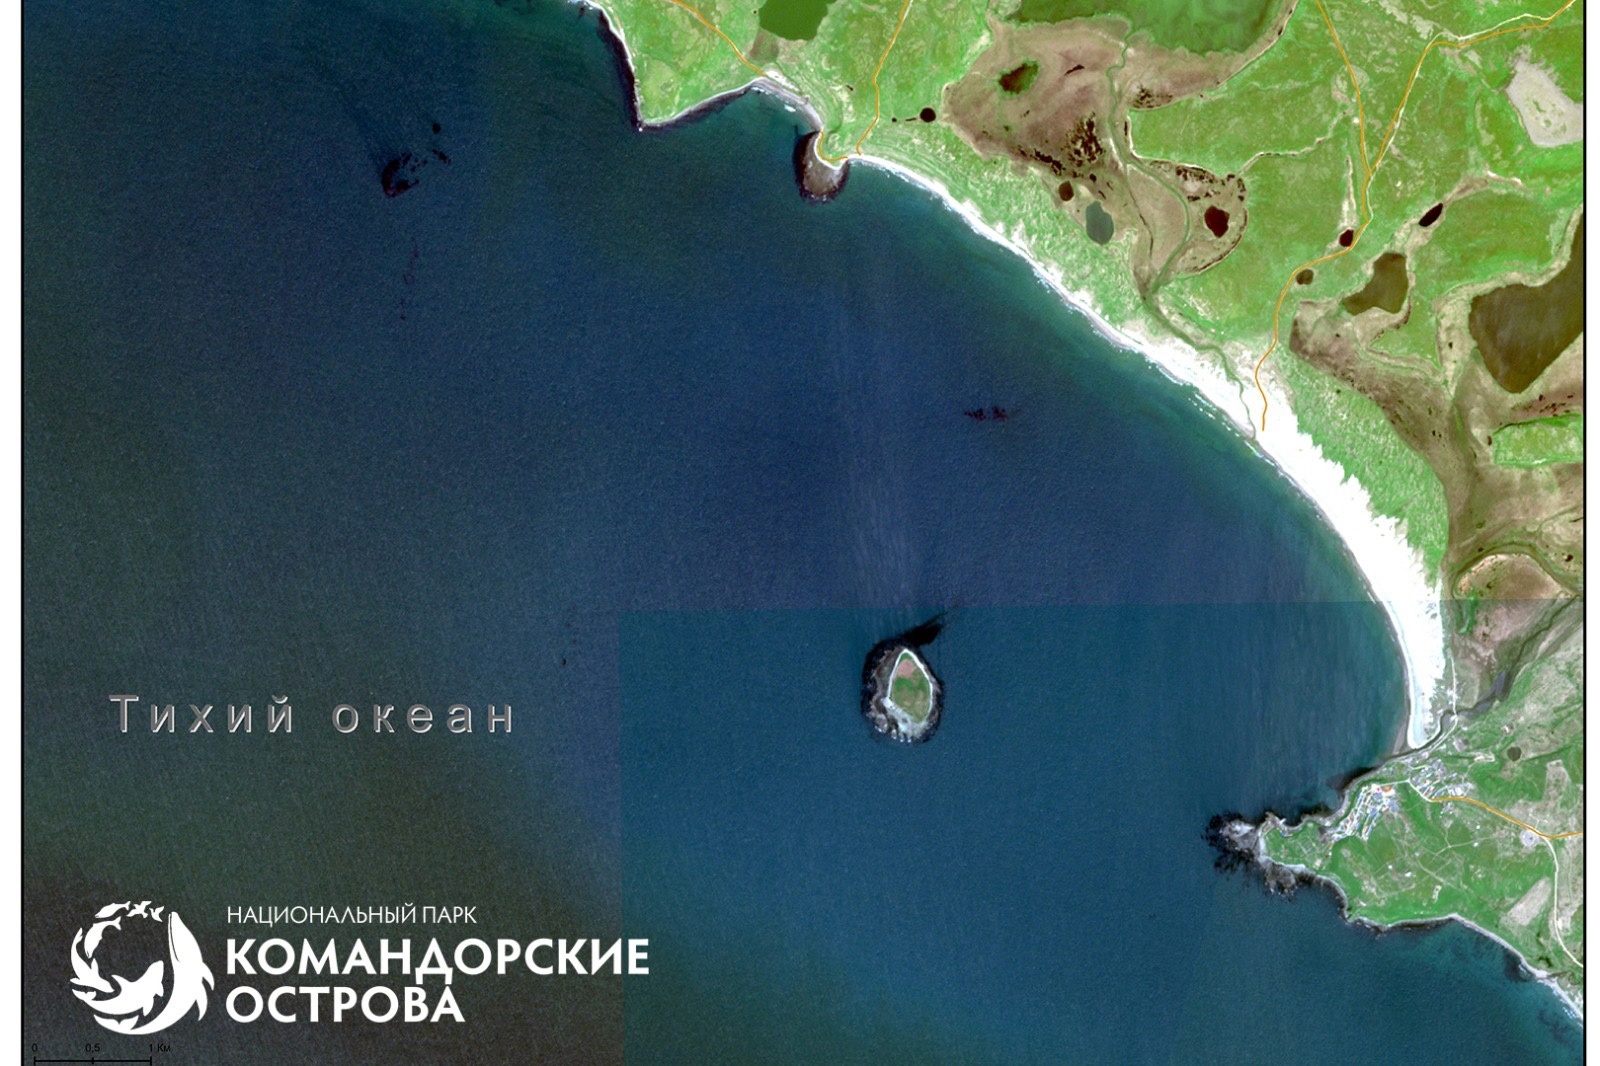 Спутниковый снимок бухты Никольский рейд (о. Беринга), на котором отчётливо видны поля водорослей в прибрежных водах